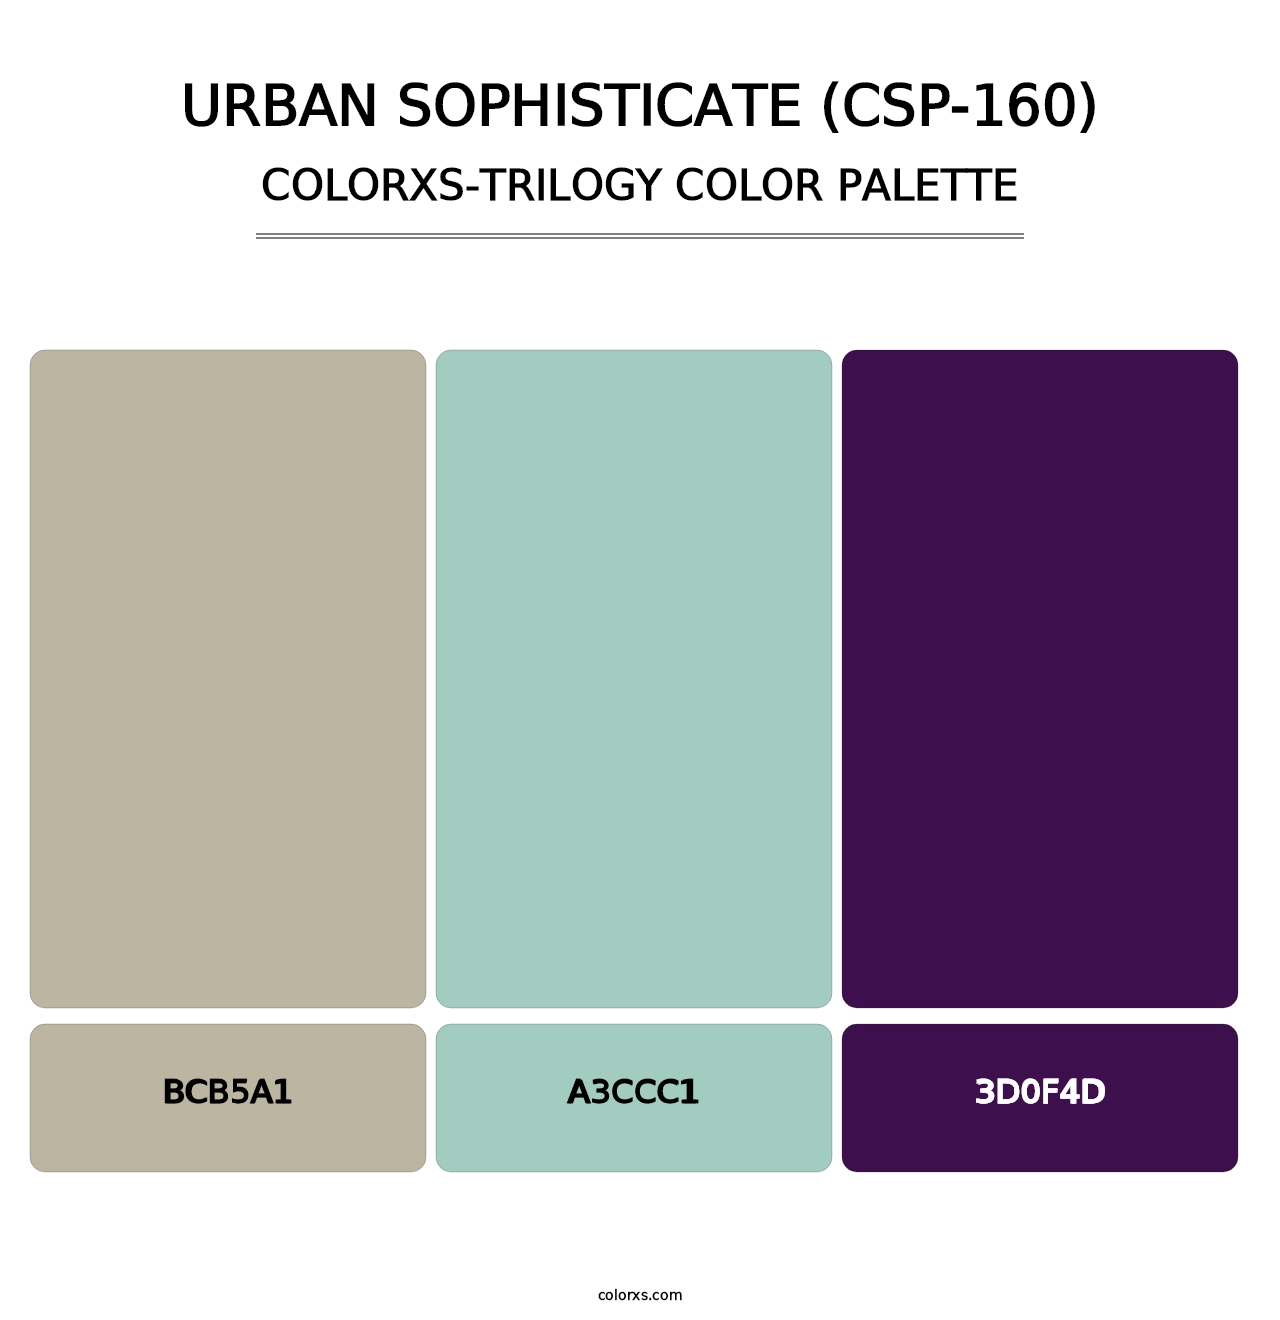 Urban Sophisticate (CSP-160) - Colorxs Trilogy Palette